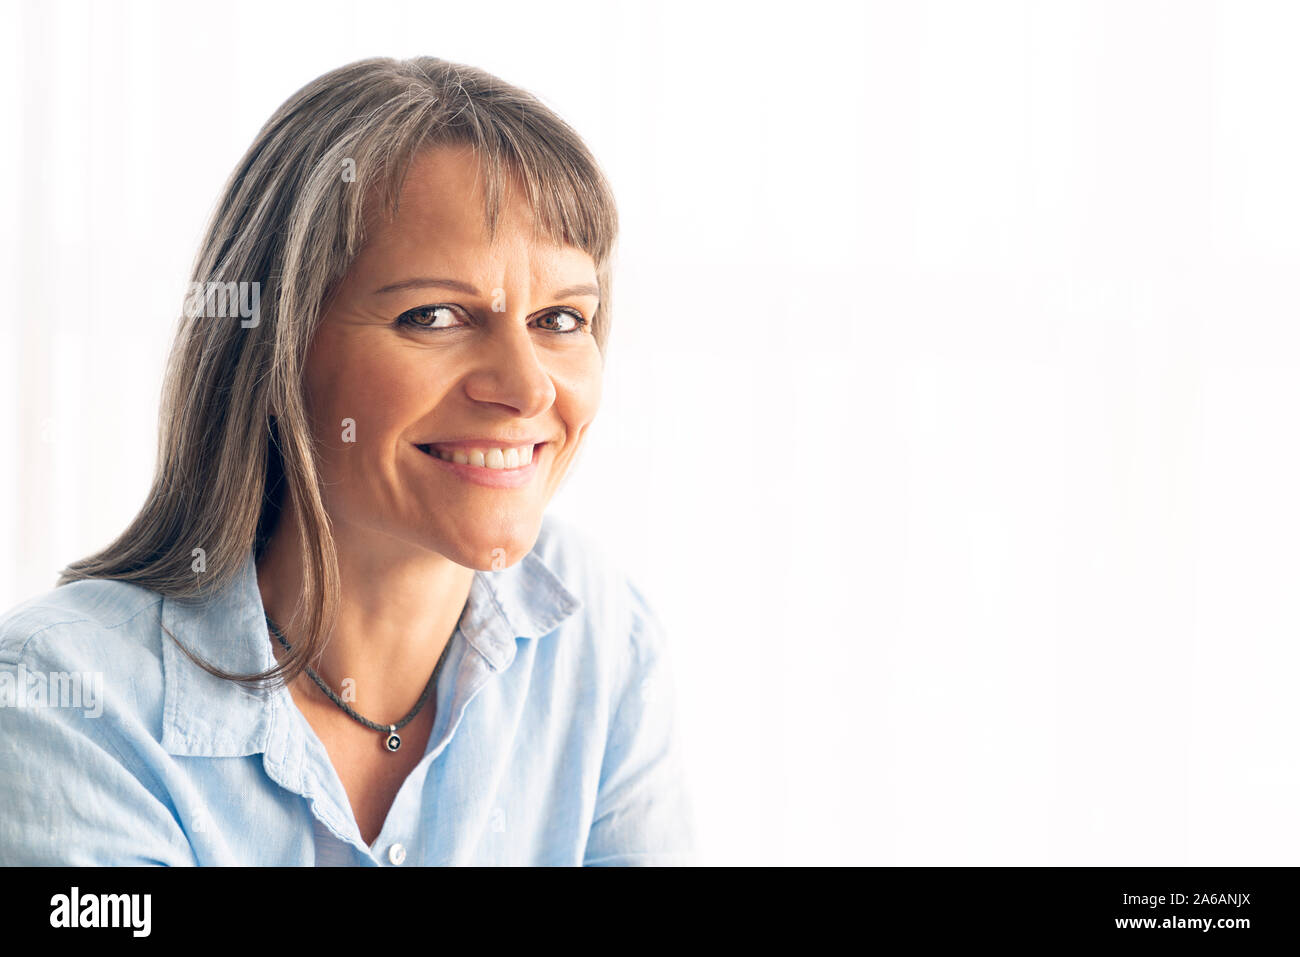 Ritratto di una donna di mezza età con i capelli grigi Foto Stock